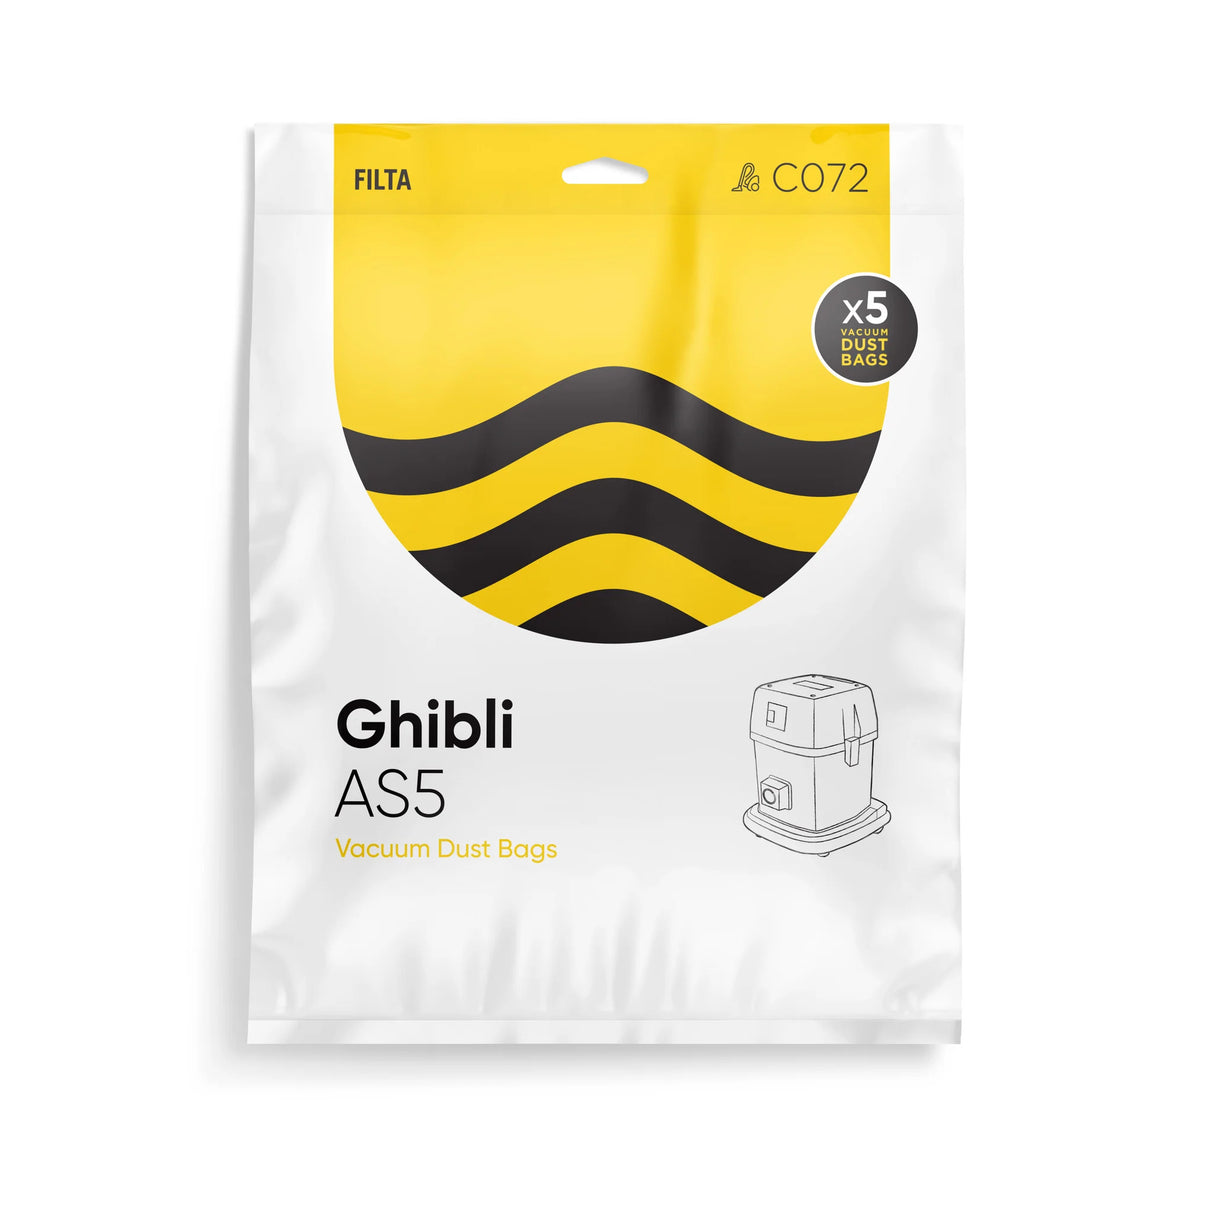 Filta Ghibli AS5 Vacuum Cleaner Bags, 5 Pack